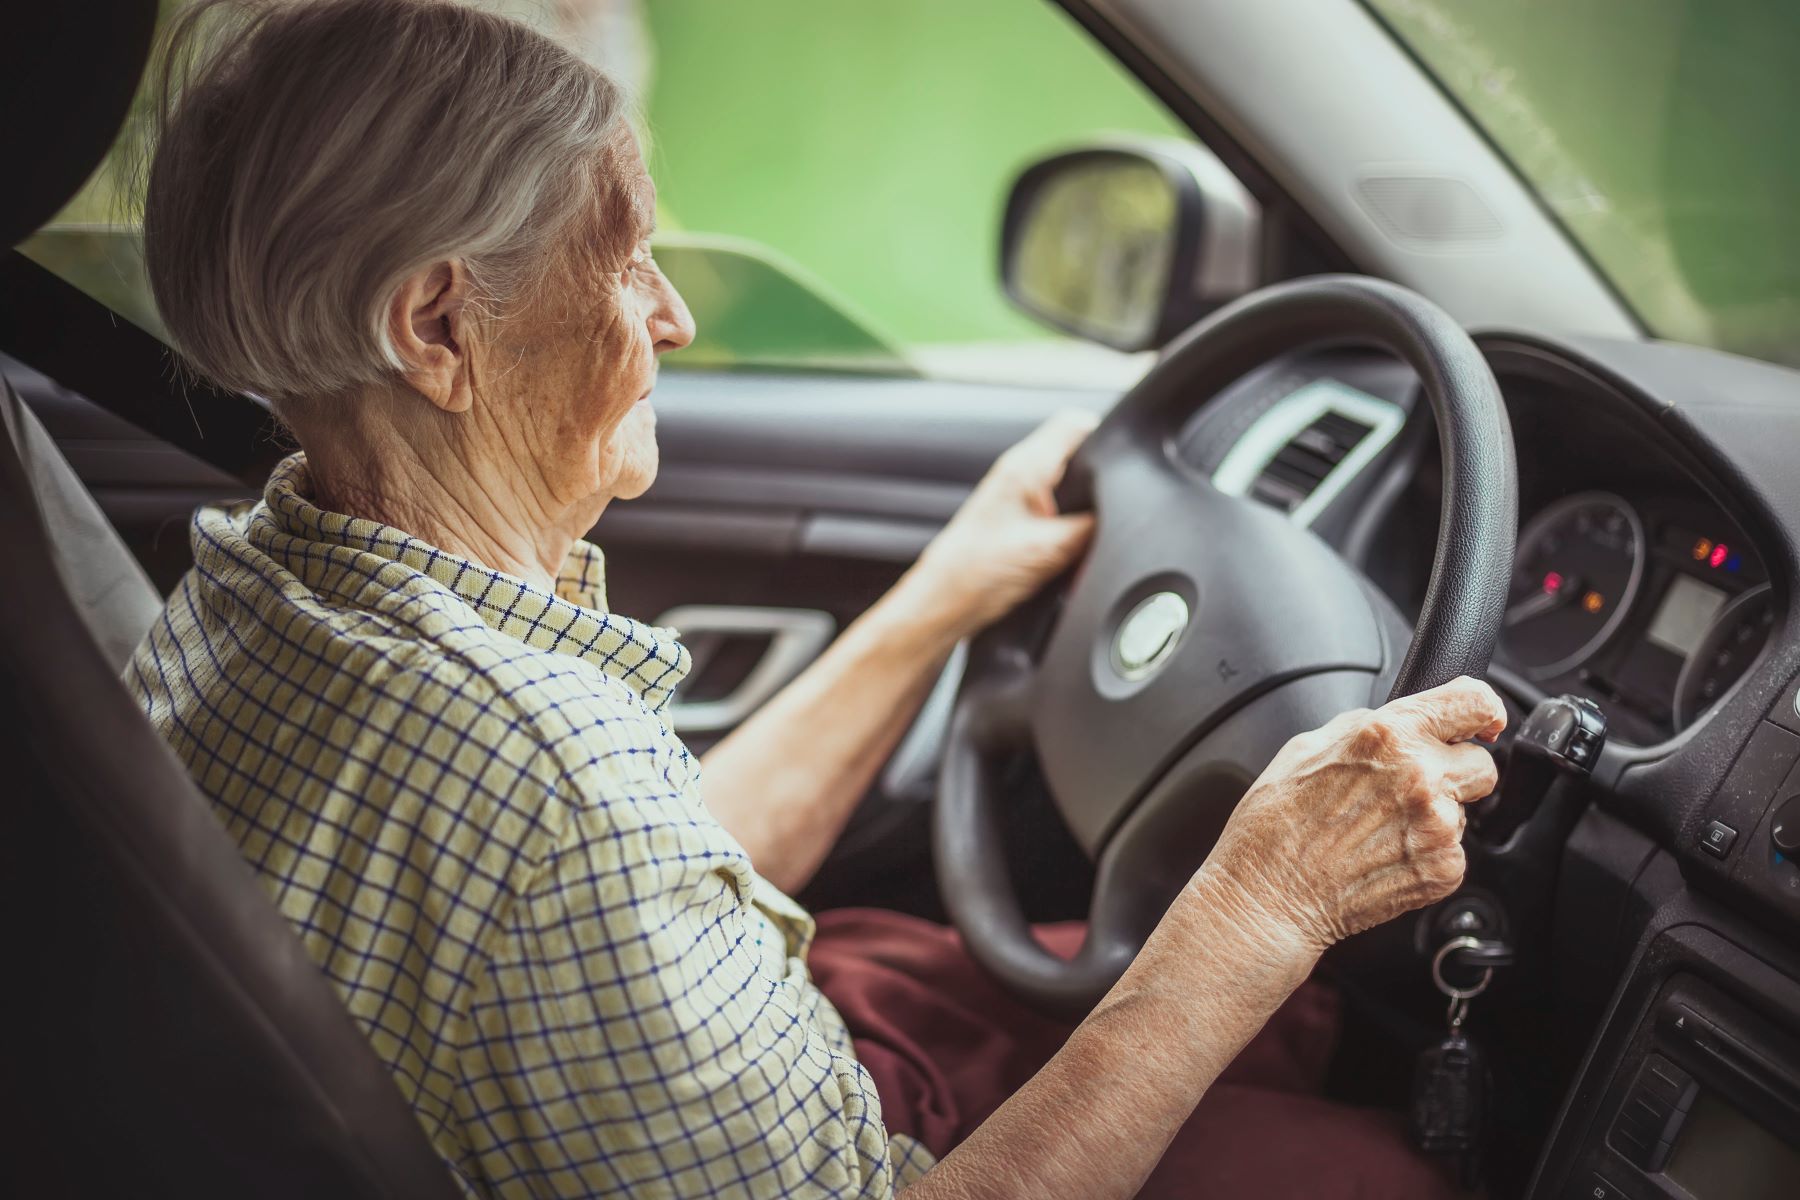 Starsza kobieta za kierownicą